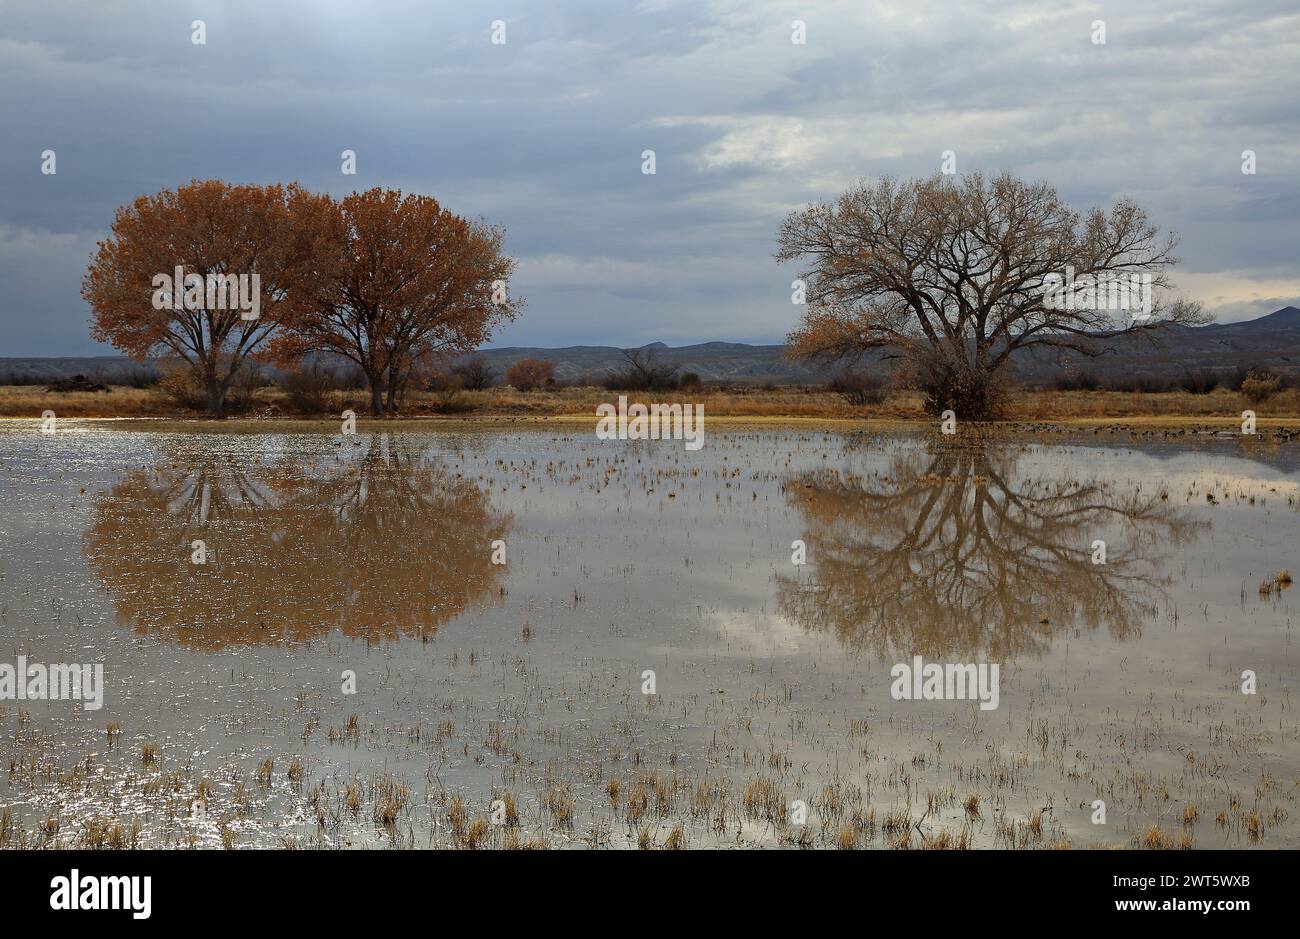 Paysage avec réflexion d'arbres - Bosque del Apache, Nouveau-Mexique Banque D'Images